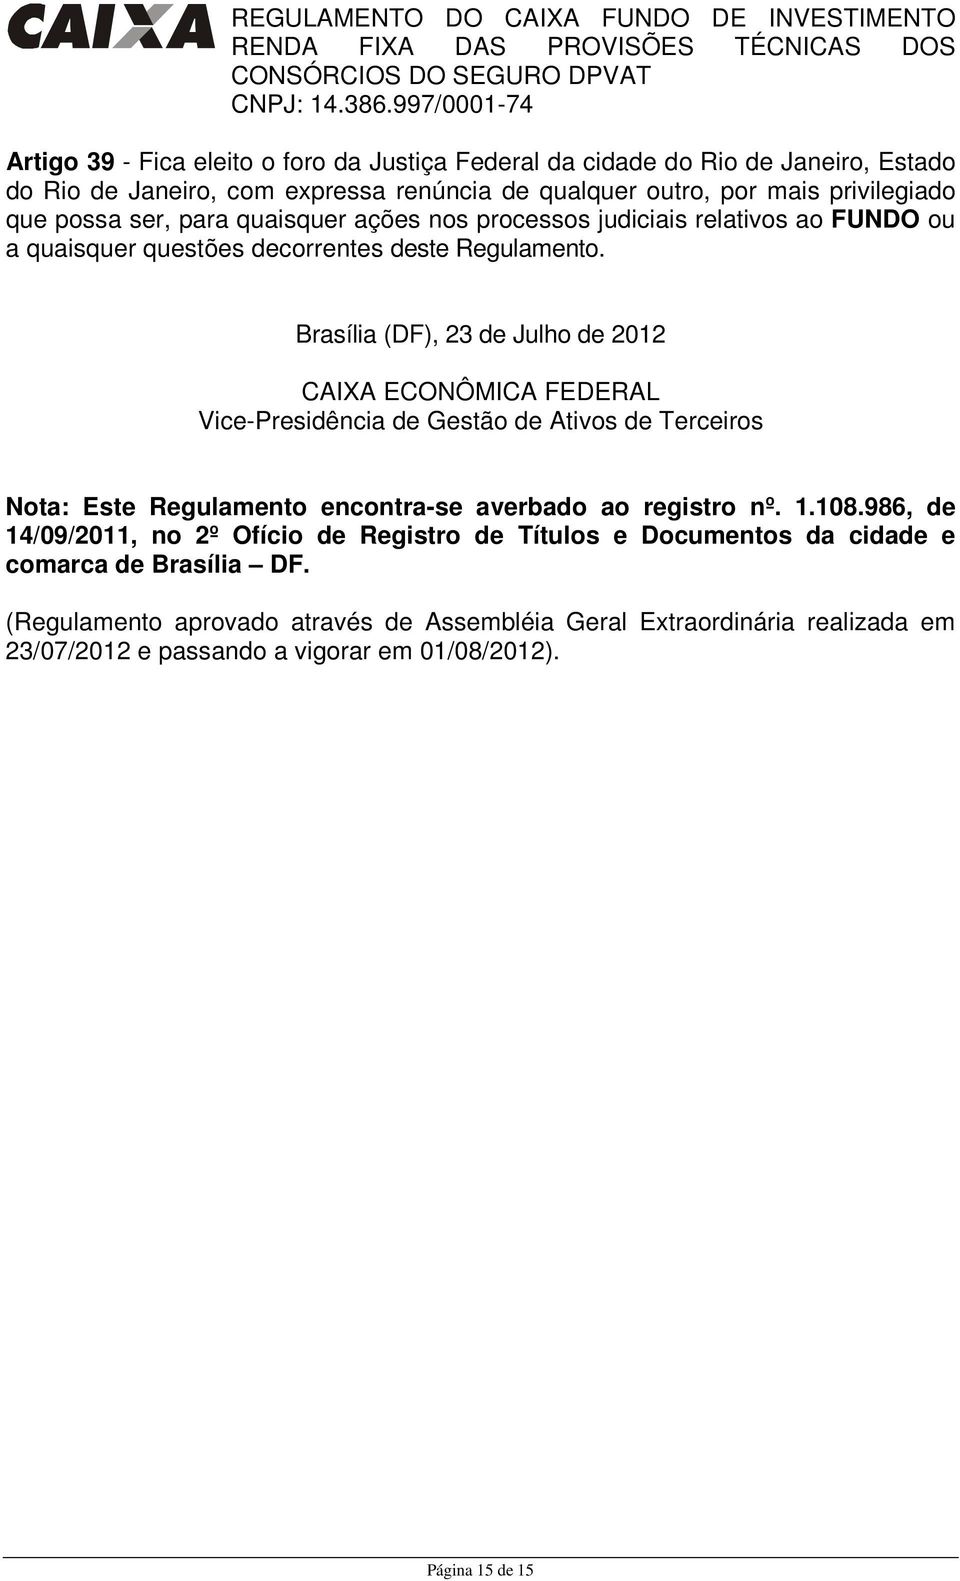 Brasília (DF), 23 de Julho de 2012 CAIXA ECONÔMICA FEDERAL Vice-Presidência de Gestão de Ativos de Terceiros Nota: Este Regulamento encontra-se averbado ao registro nº. 1.108.